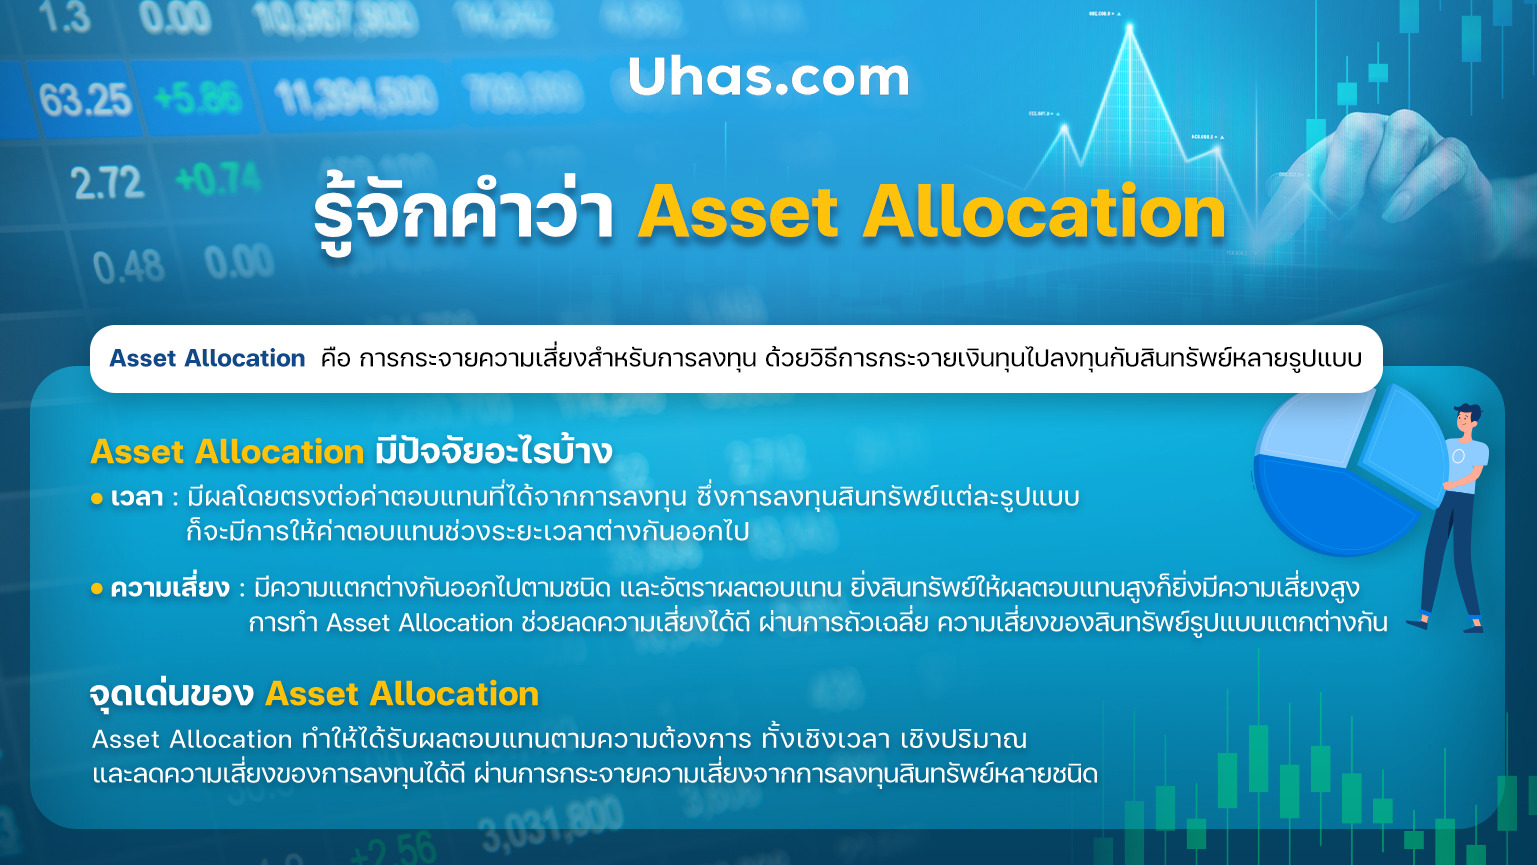 Asset Allocation มีปัจจัยอะไรบ้าง - uhas